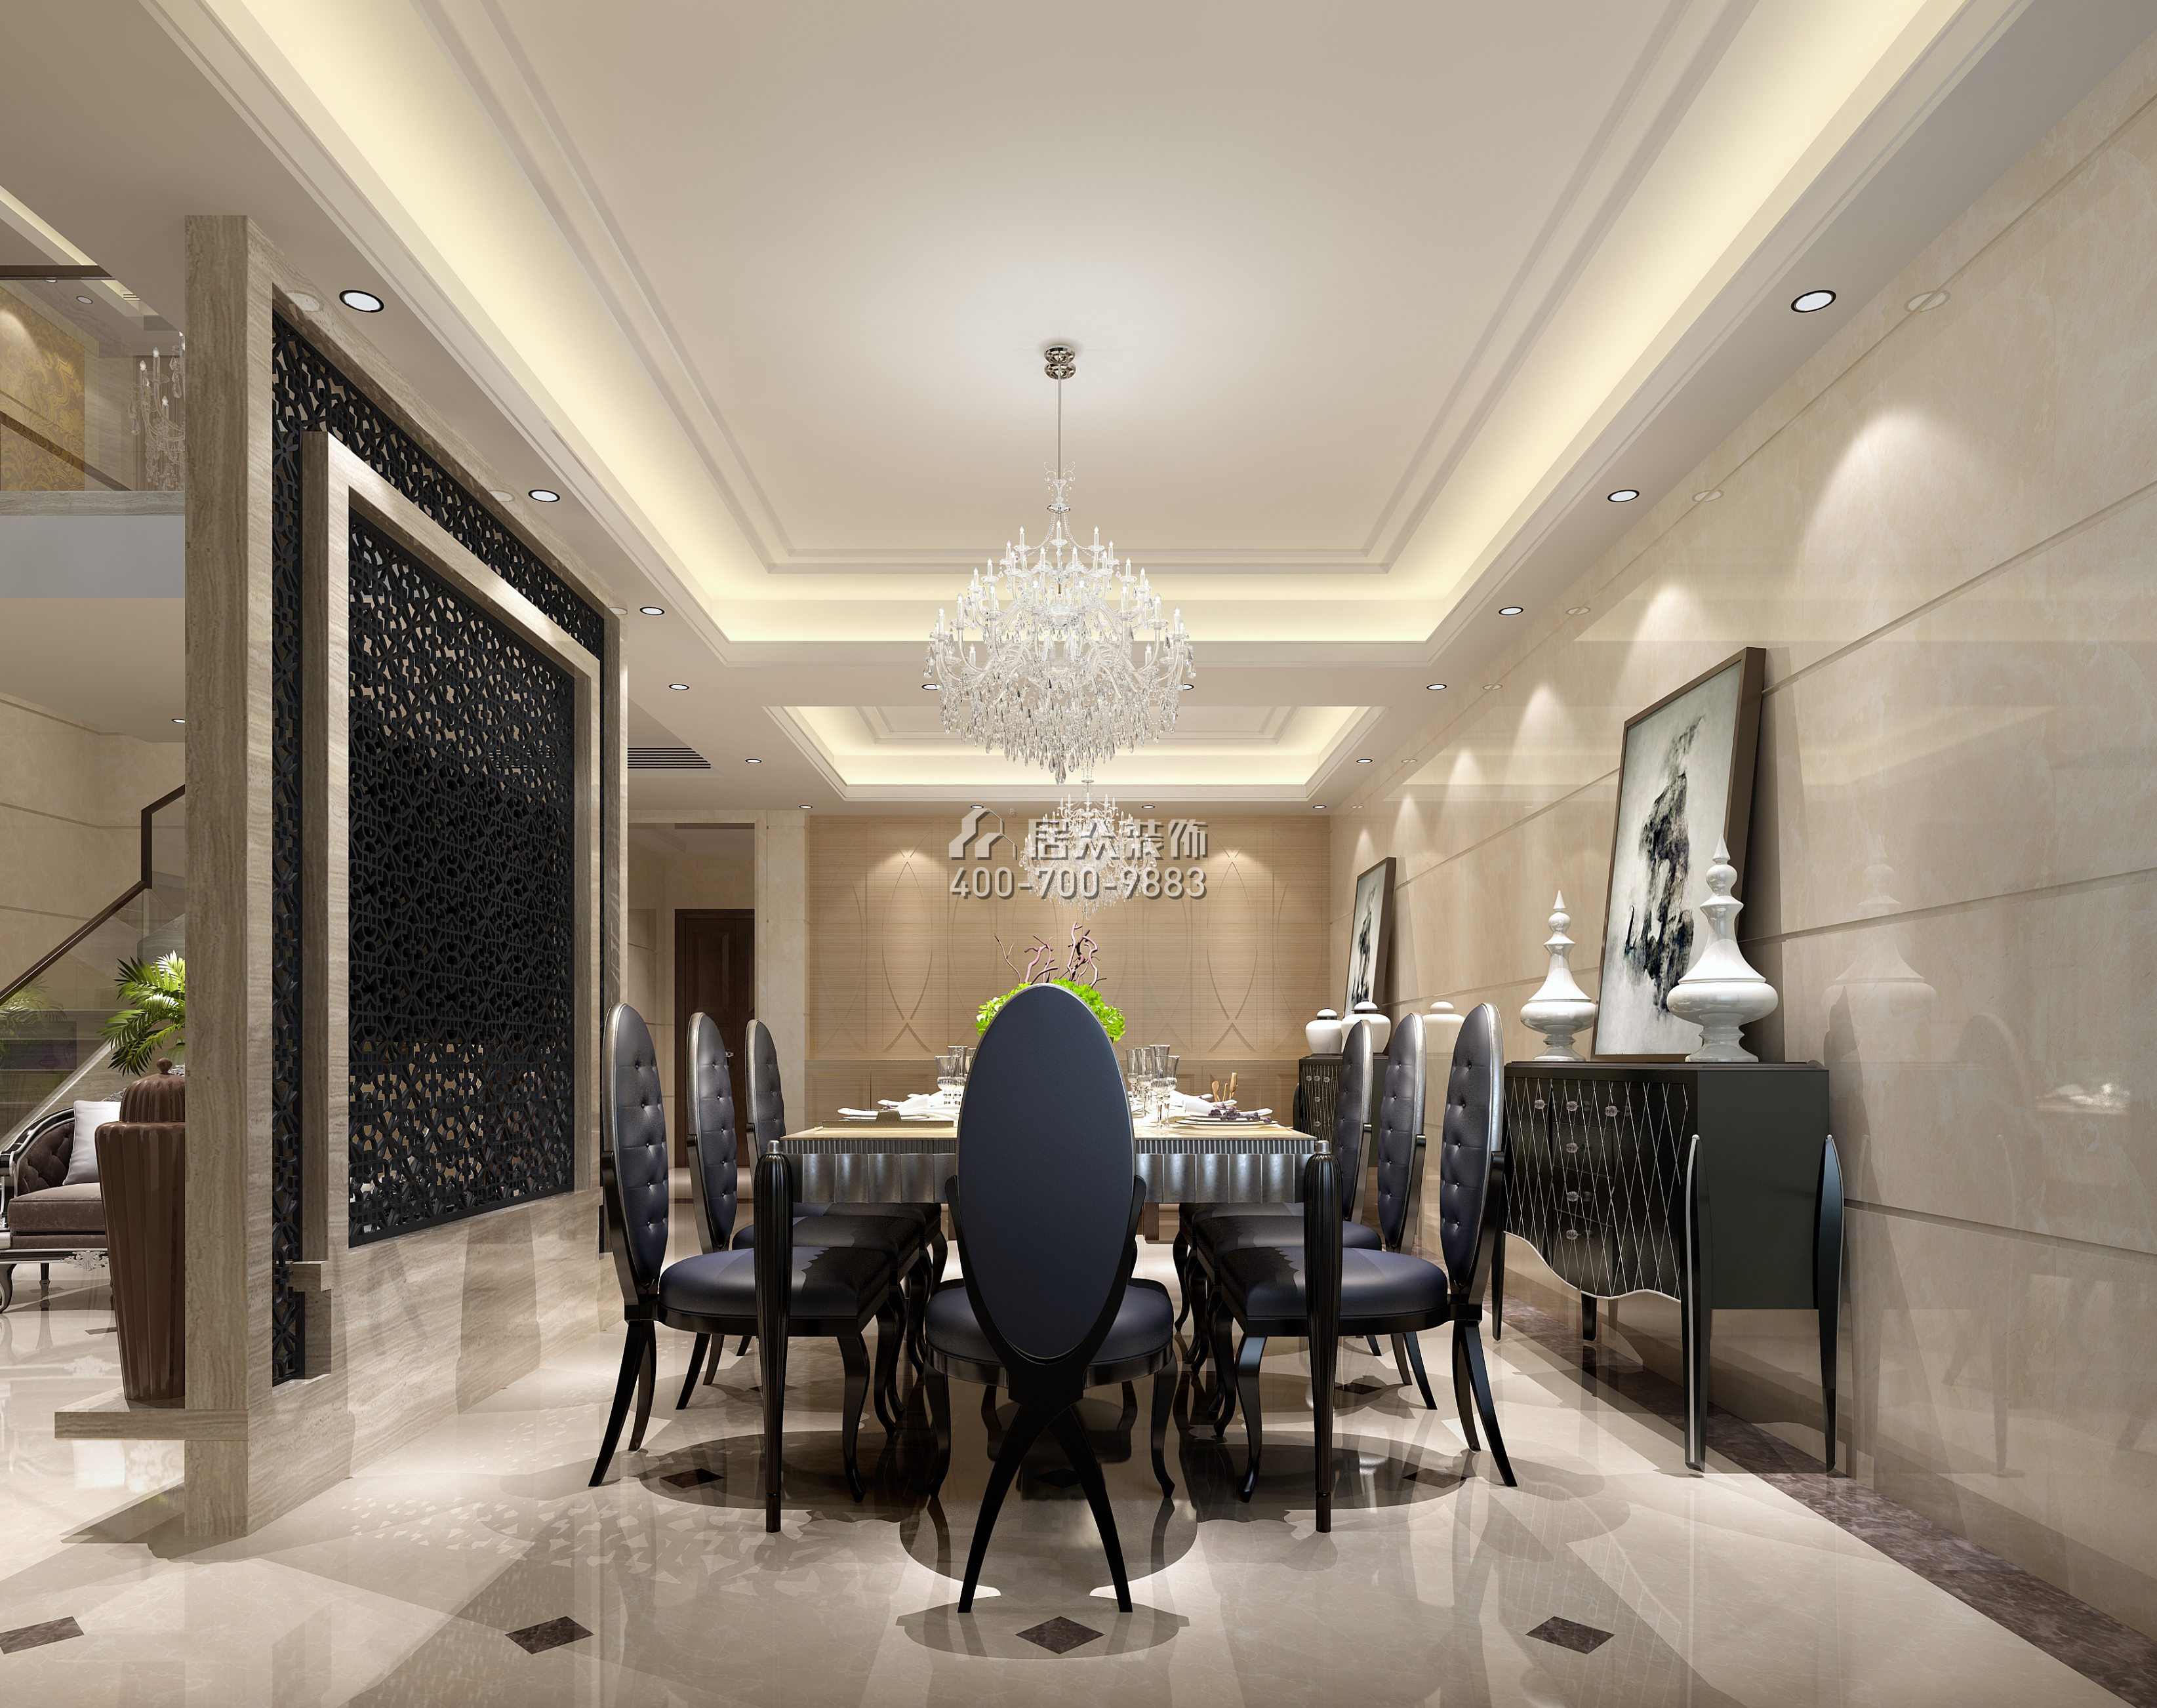 黄埔雅苑二期268平方米新古典风格复式户型餐厅开元官网效果图